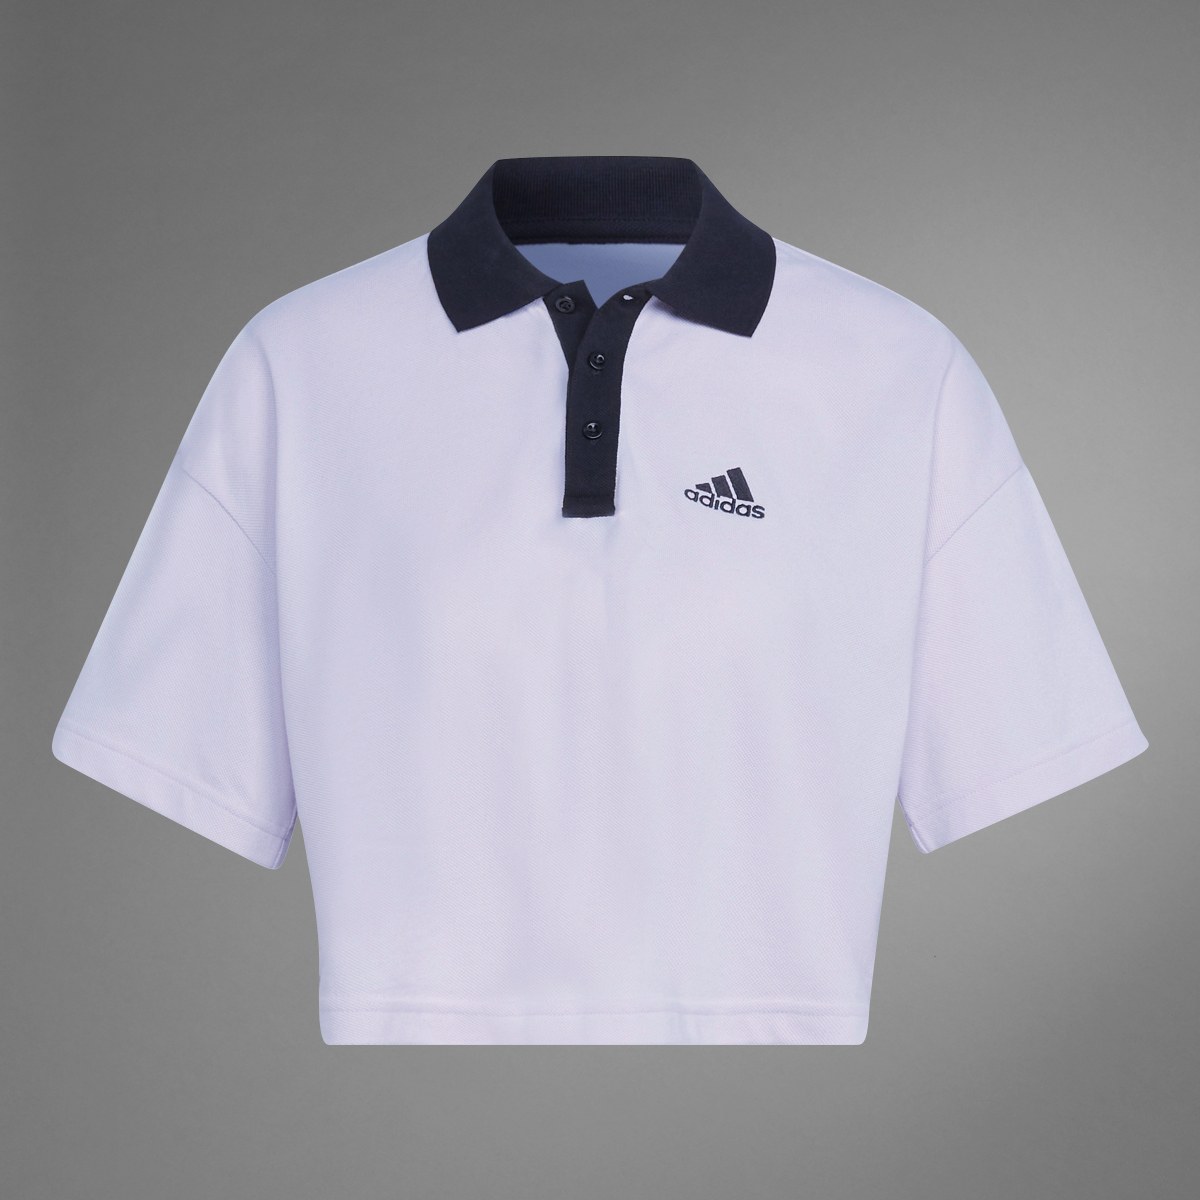 Adidas Cropped Piqué Polo Shirt. 10